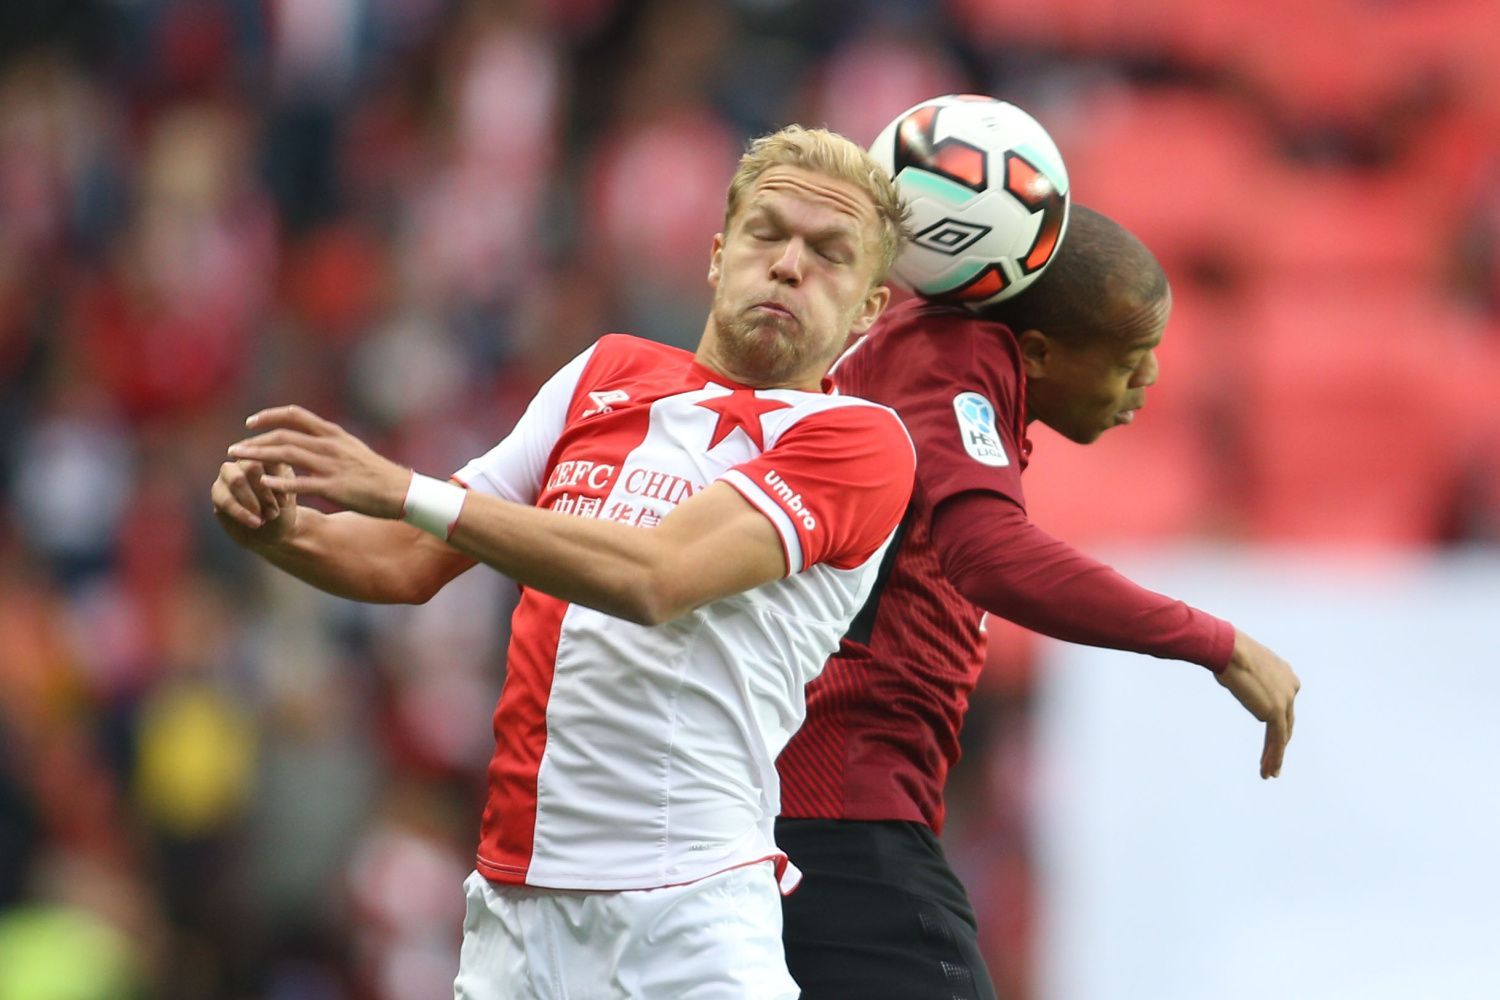 Derby Slavia-Sparta: Mick van Buren